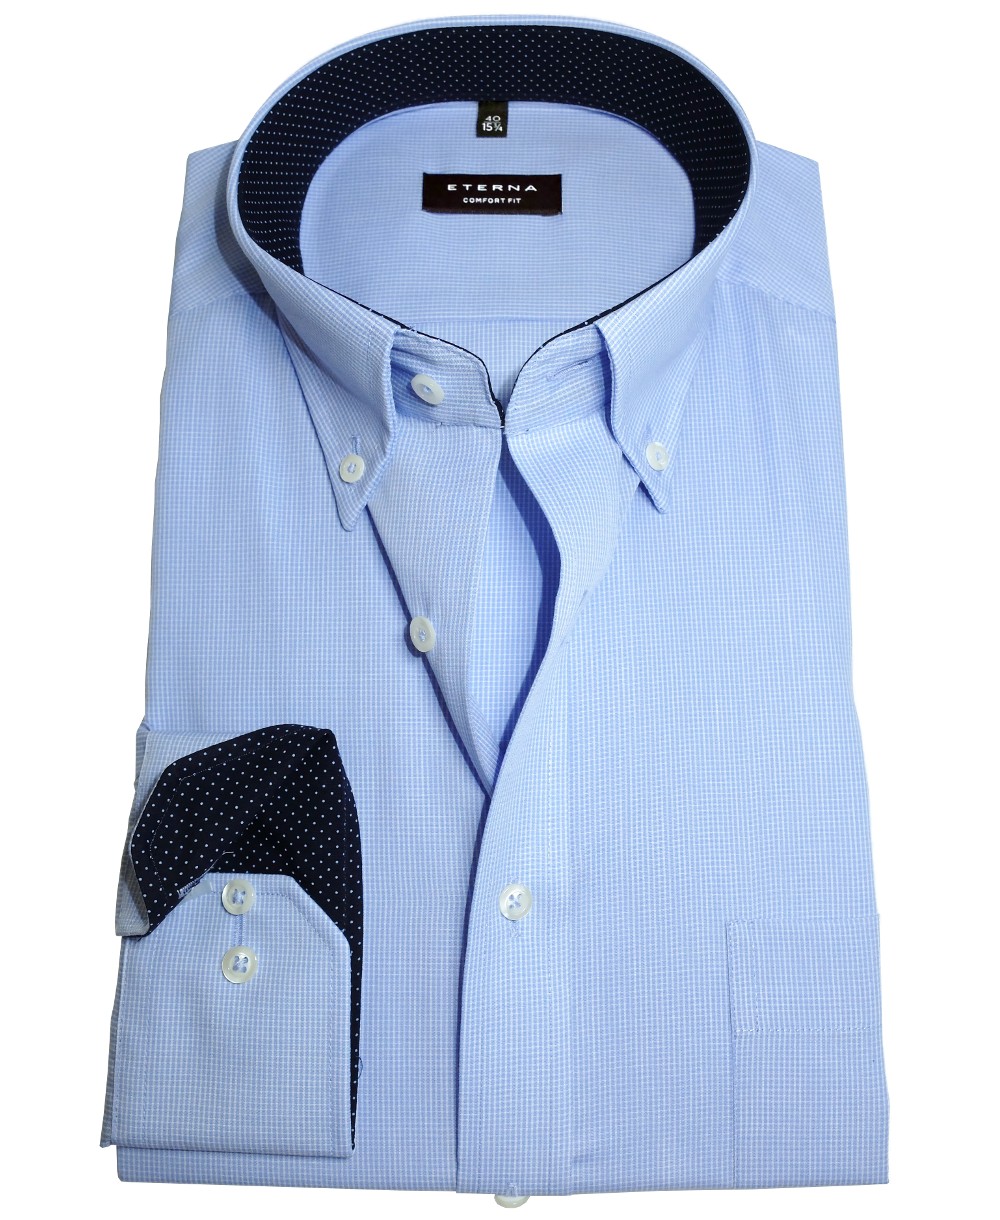 eterna Comfort Fit Business Langarmhemd in hellblau Gitterkaro Patches -  Hochwertige Herrenmode führender Marken zu fairen